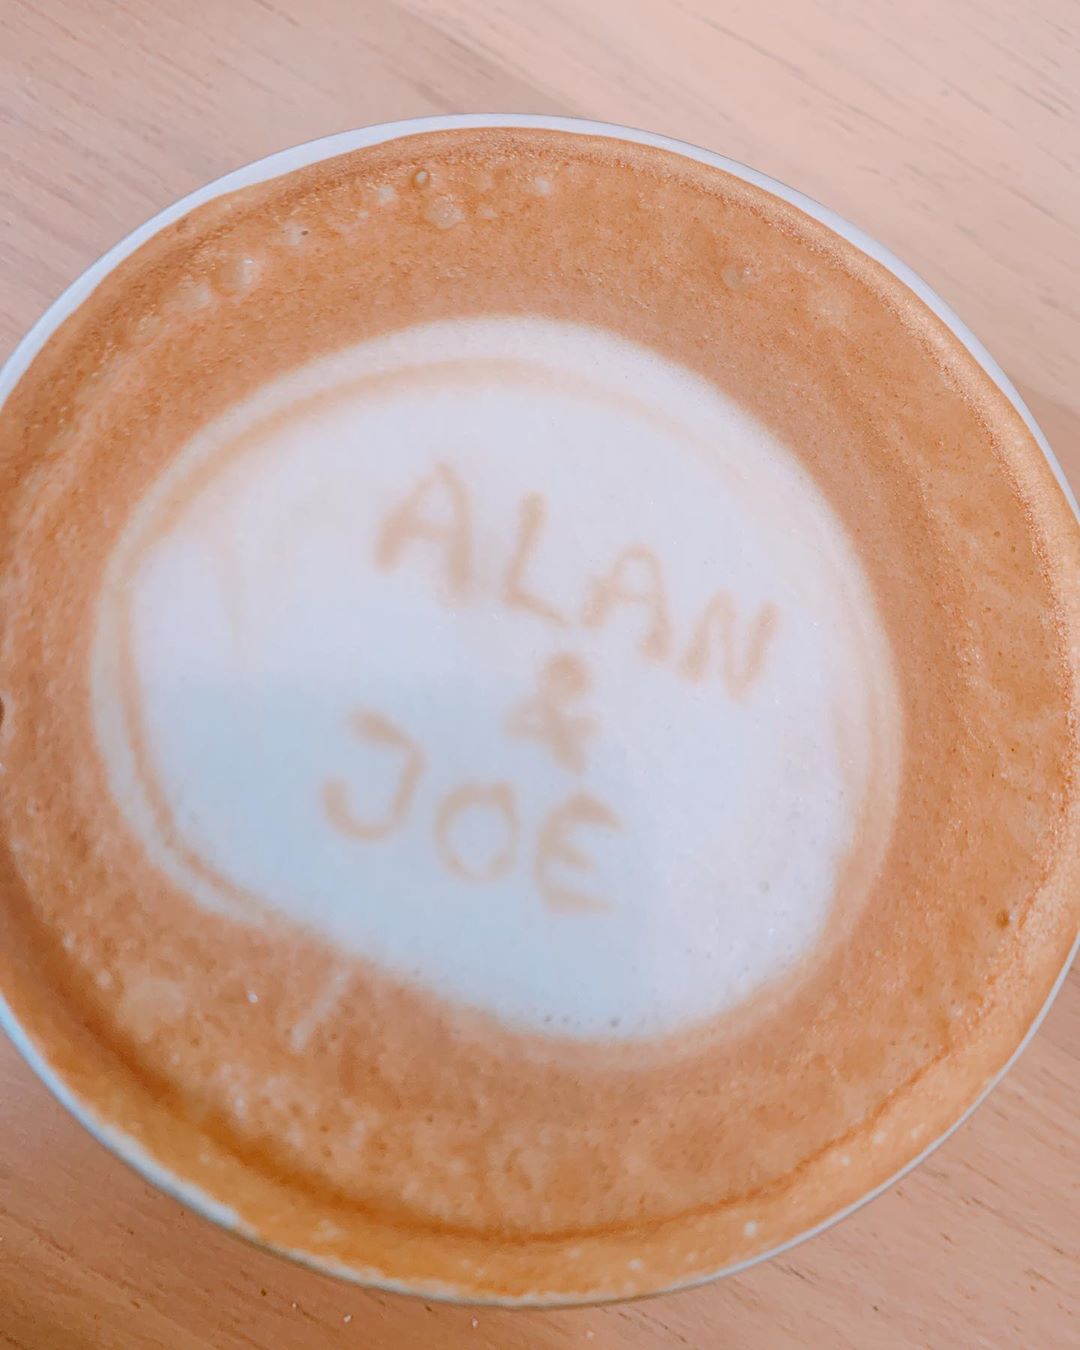 陈乔恩贴出的咖啡照上，印有Alan和自己英文名Joe。（图/IG）